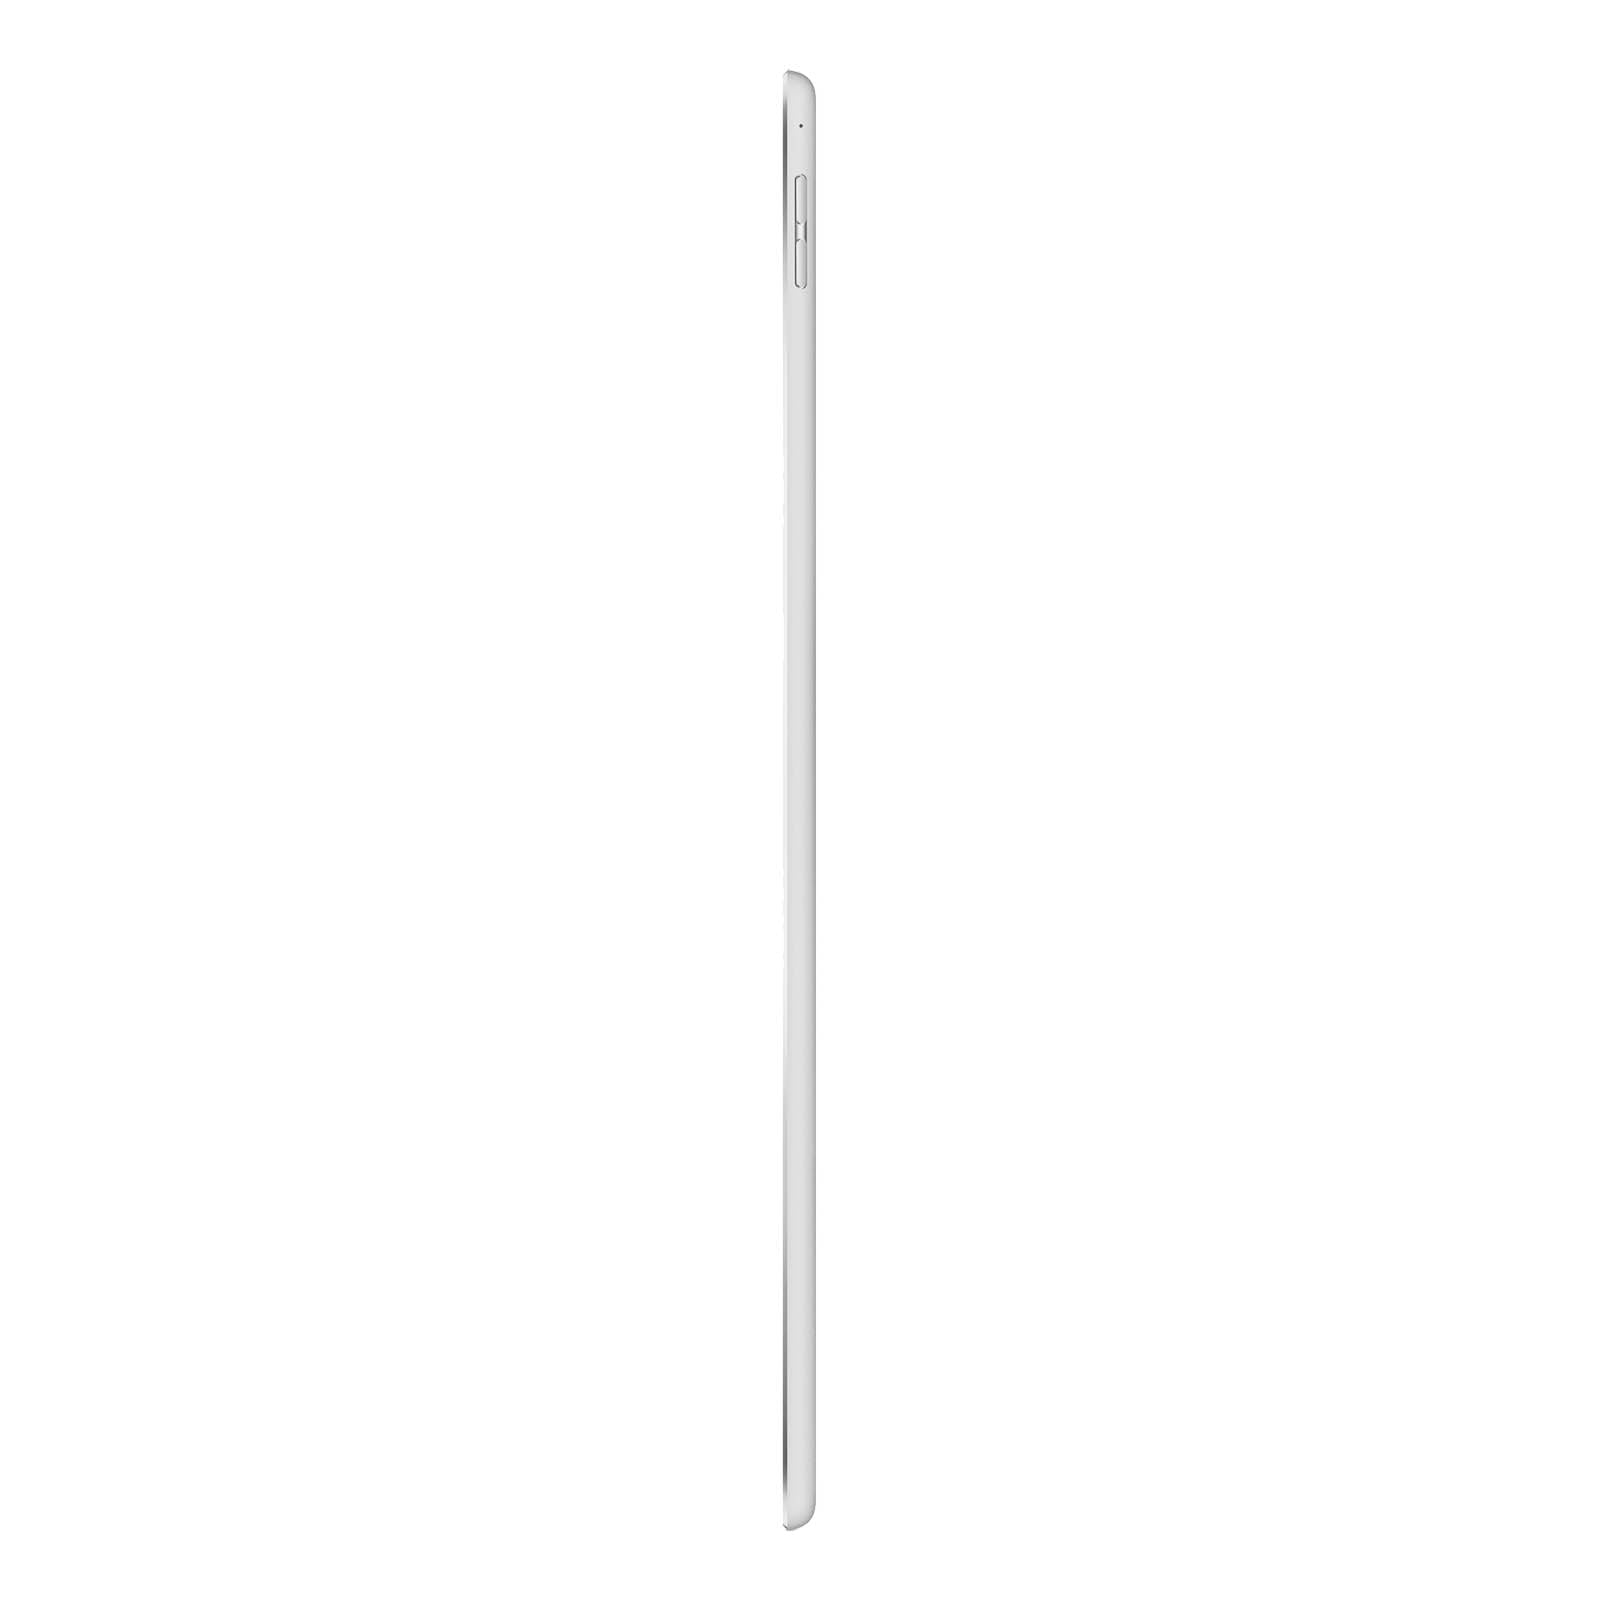 iPad Pro 12.9 Inch 3rd Gen 512GB Silver Pristine - WiFi